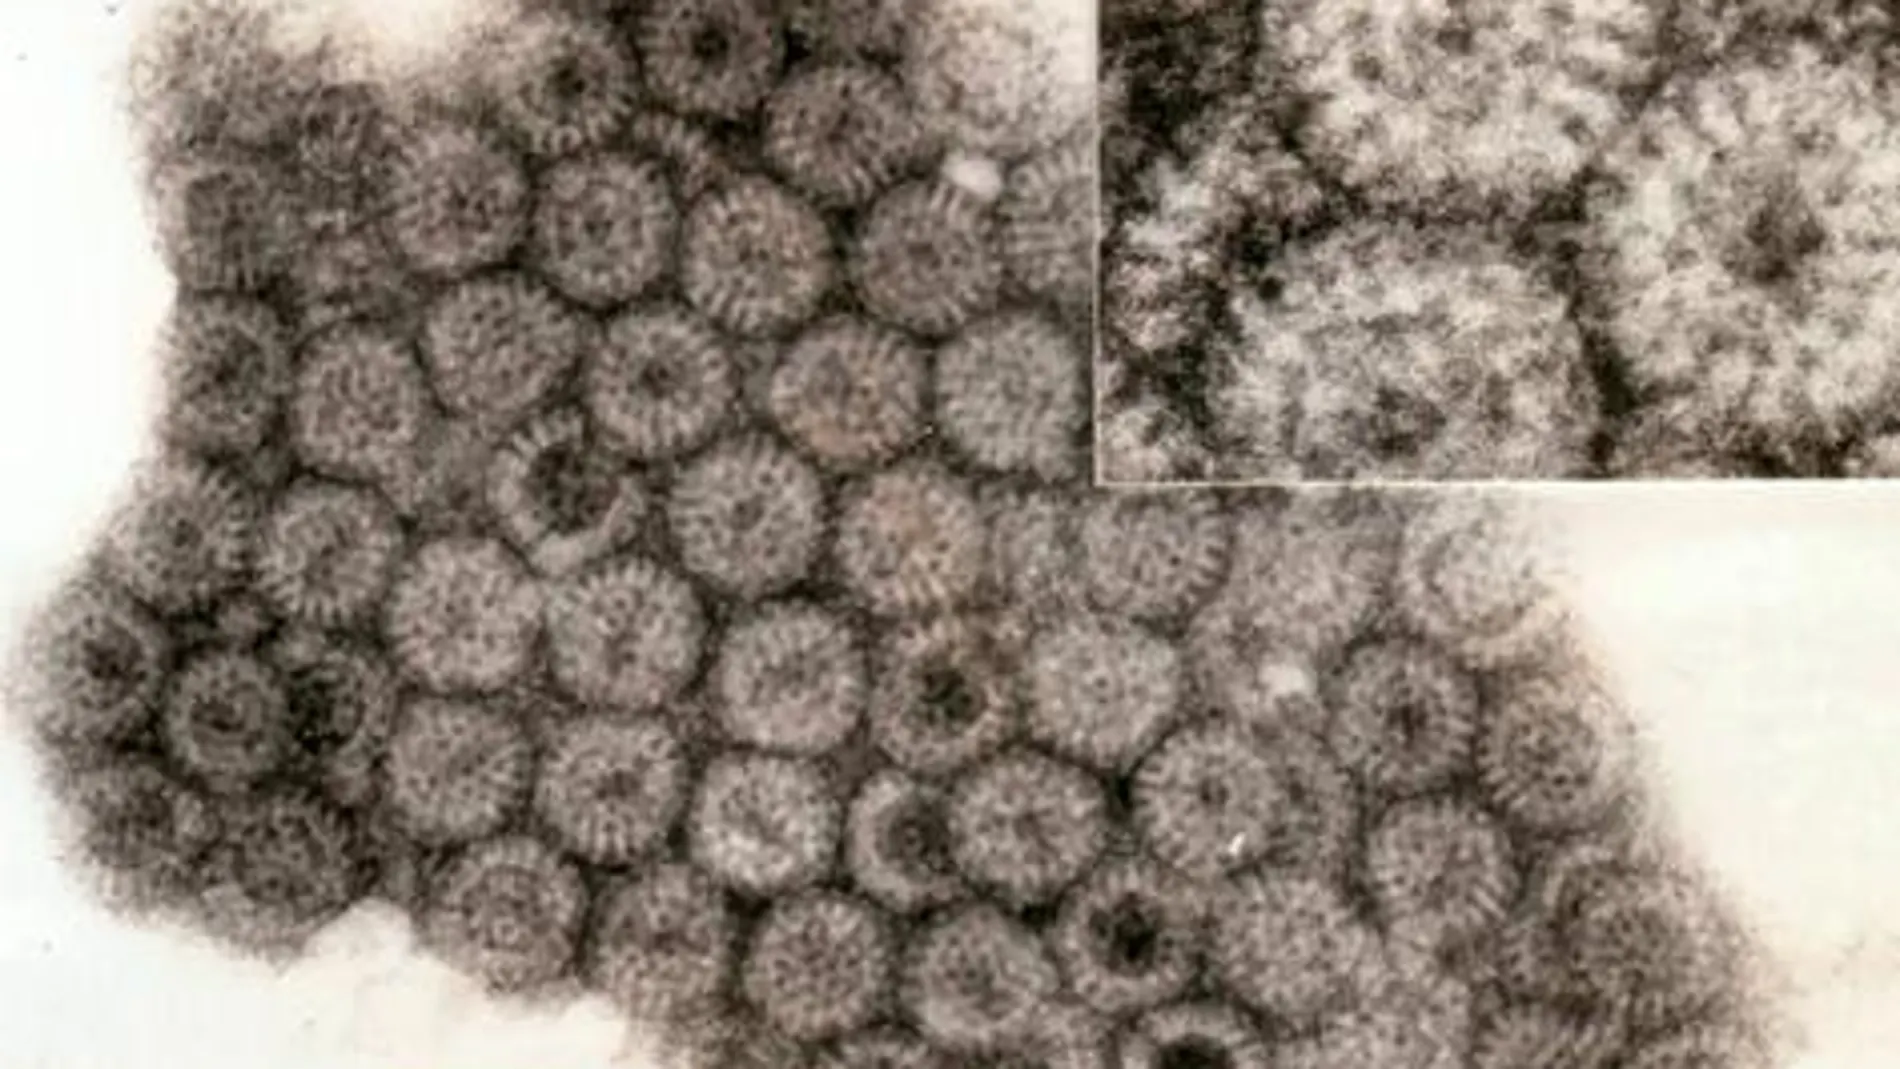 El rotavirus es un virus esférico de unos 75 nanómetros de diámetro con aspecto de rueda